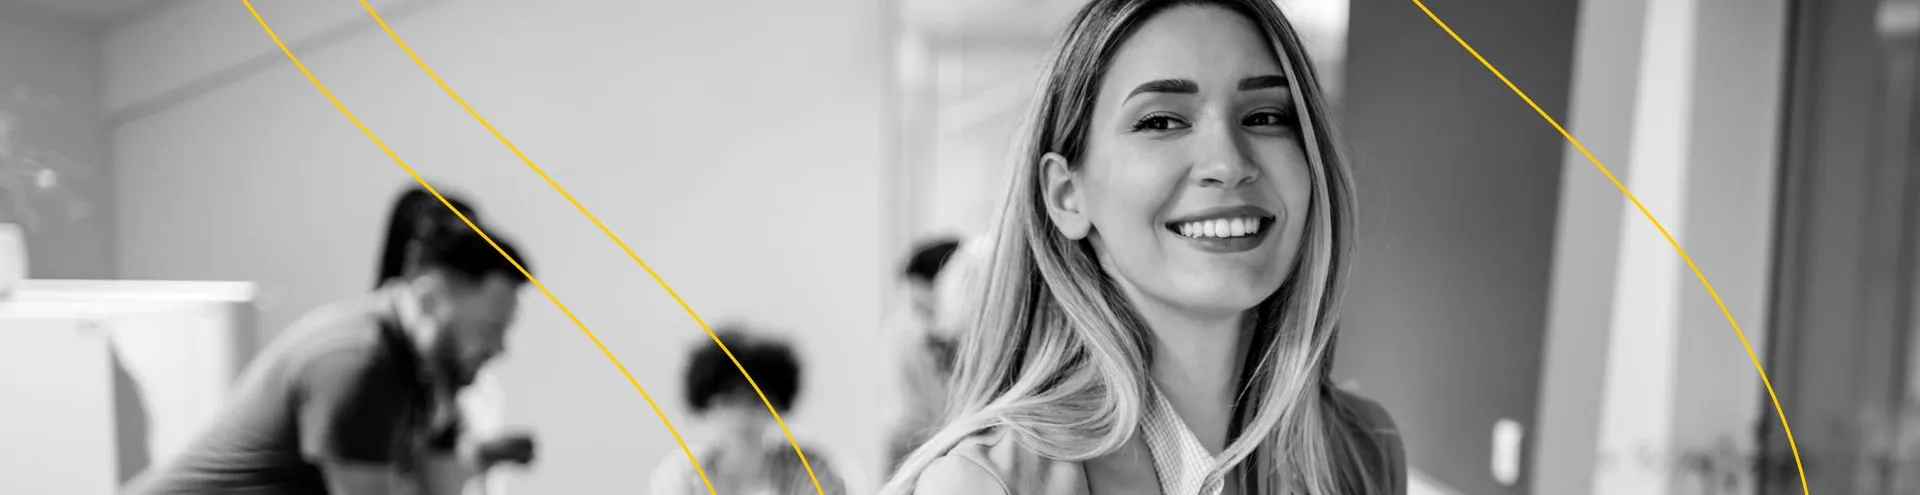 Uma imagem em preto e branco que retrata uma mulher sorridente em primeiro plano, destacando sua expressão alegre e confiante. Ao fundo, uma equipe dedicada está trabalhando em conjunto, transmitindo uma atmosfera de colaboração e produtividade.